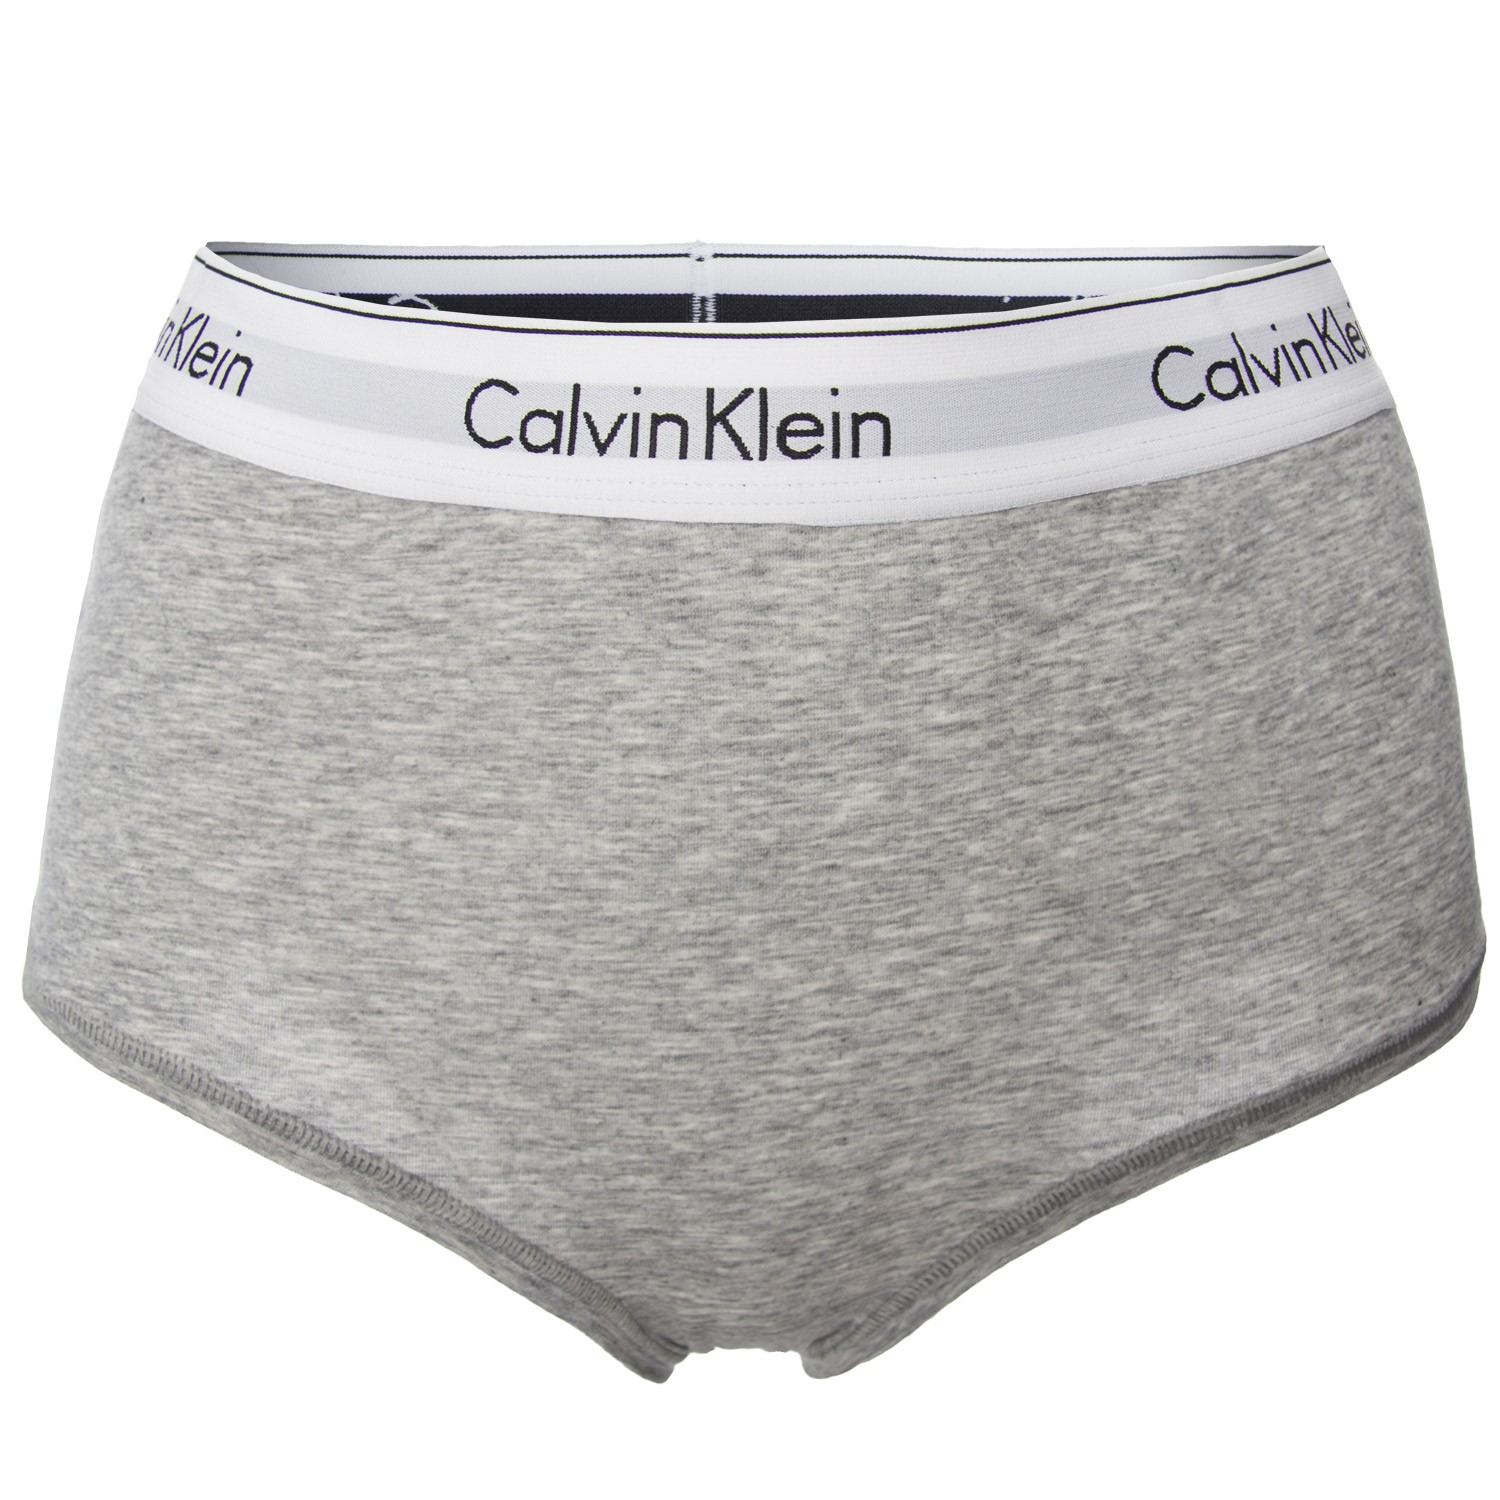 Calvin Klein, Modern Cotton Brief, Hipster Briefs